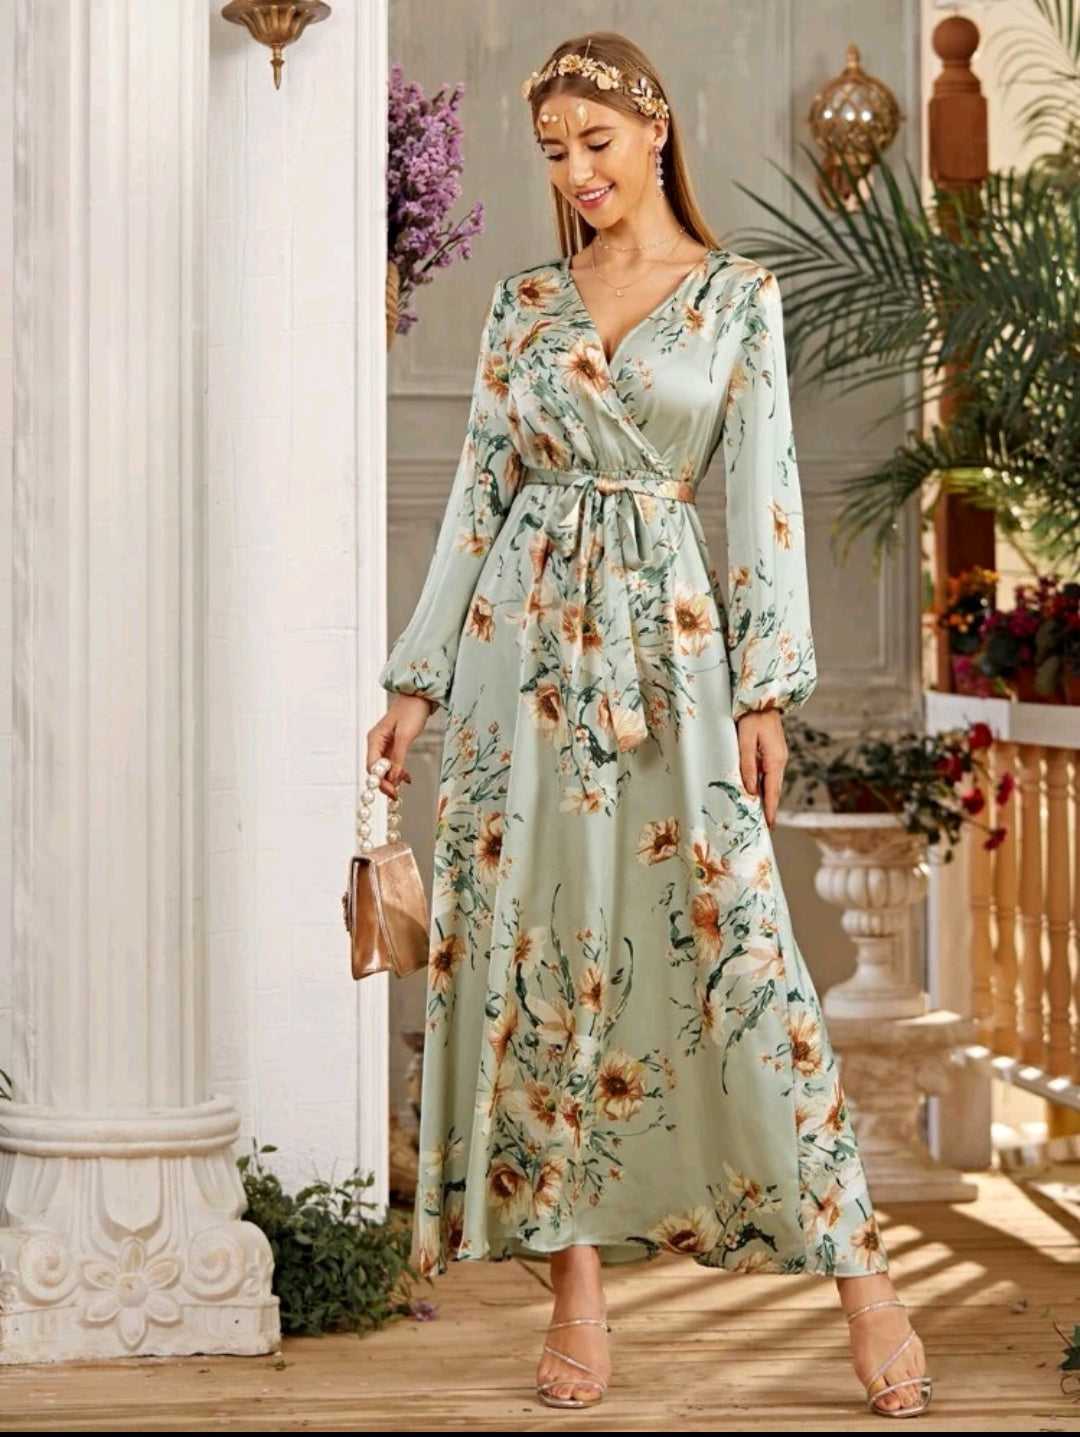 Floral print satin belted dress